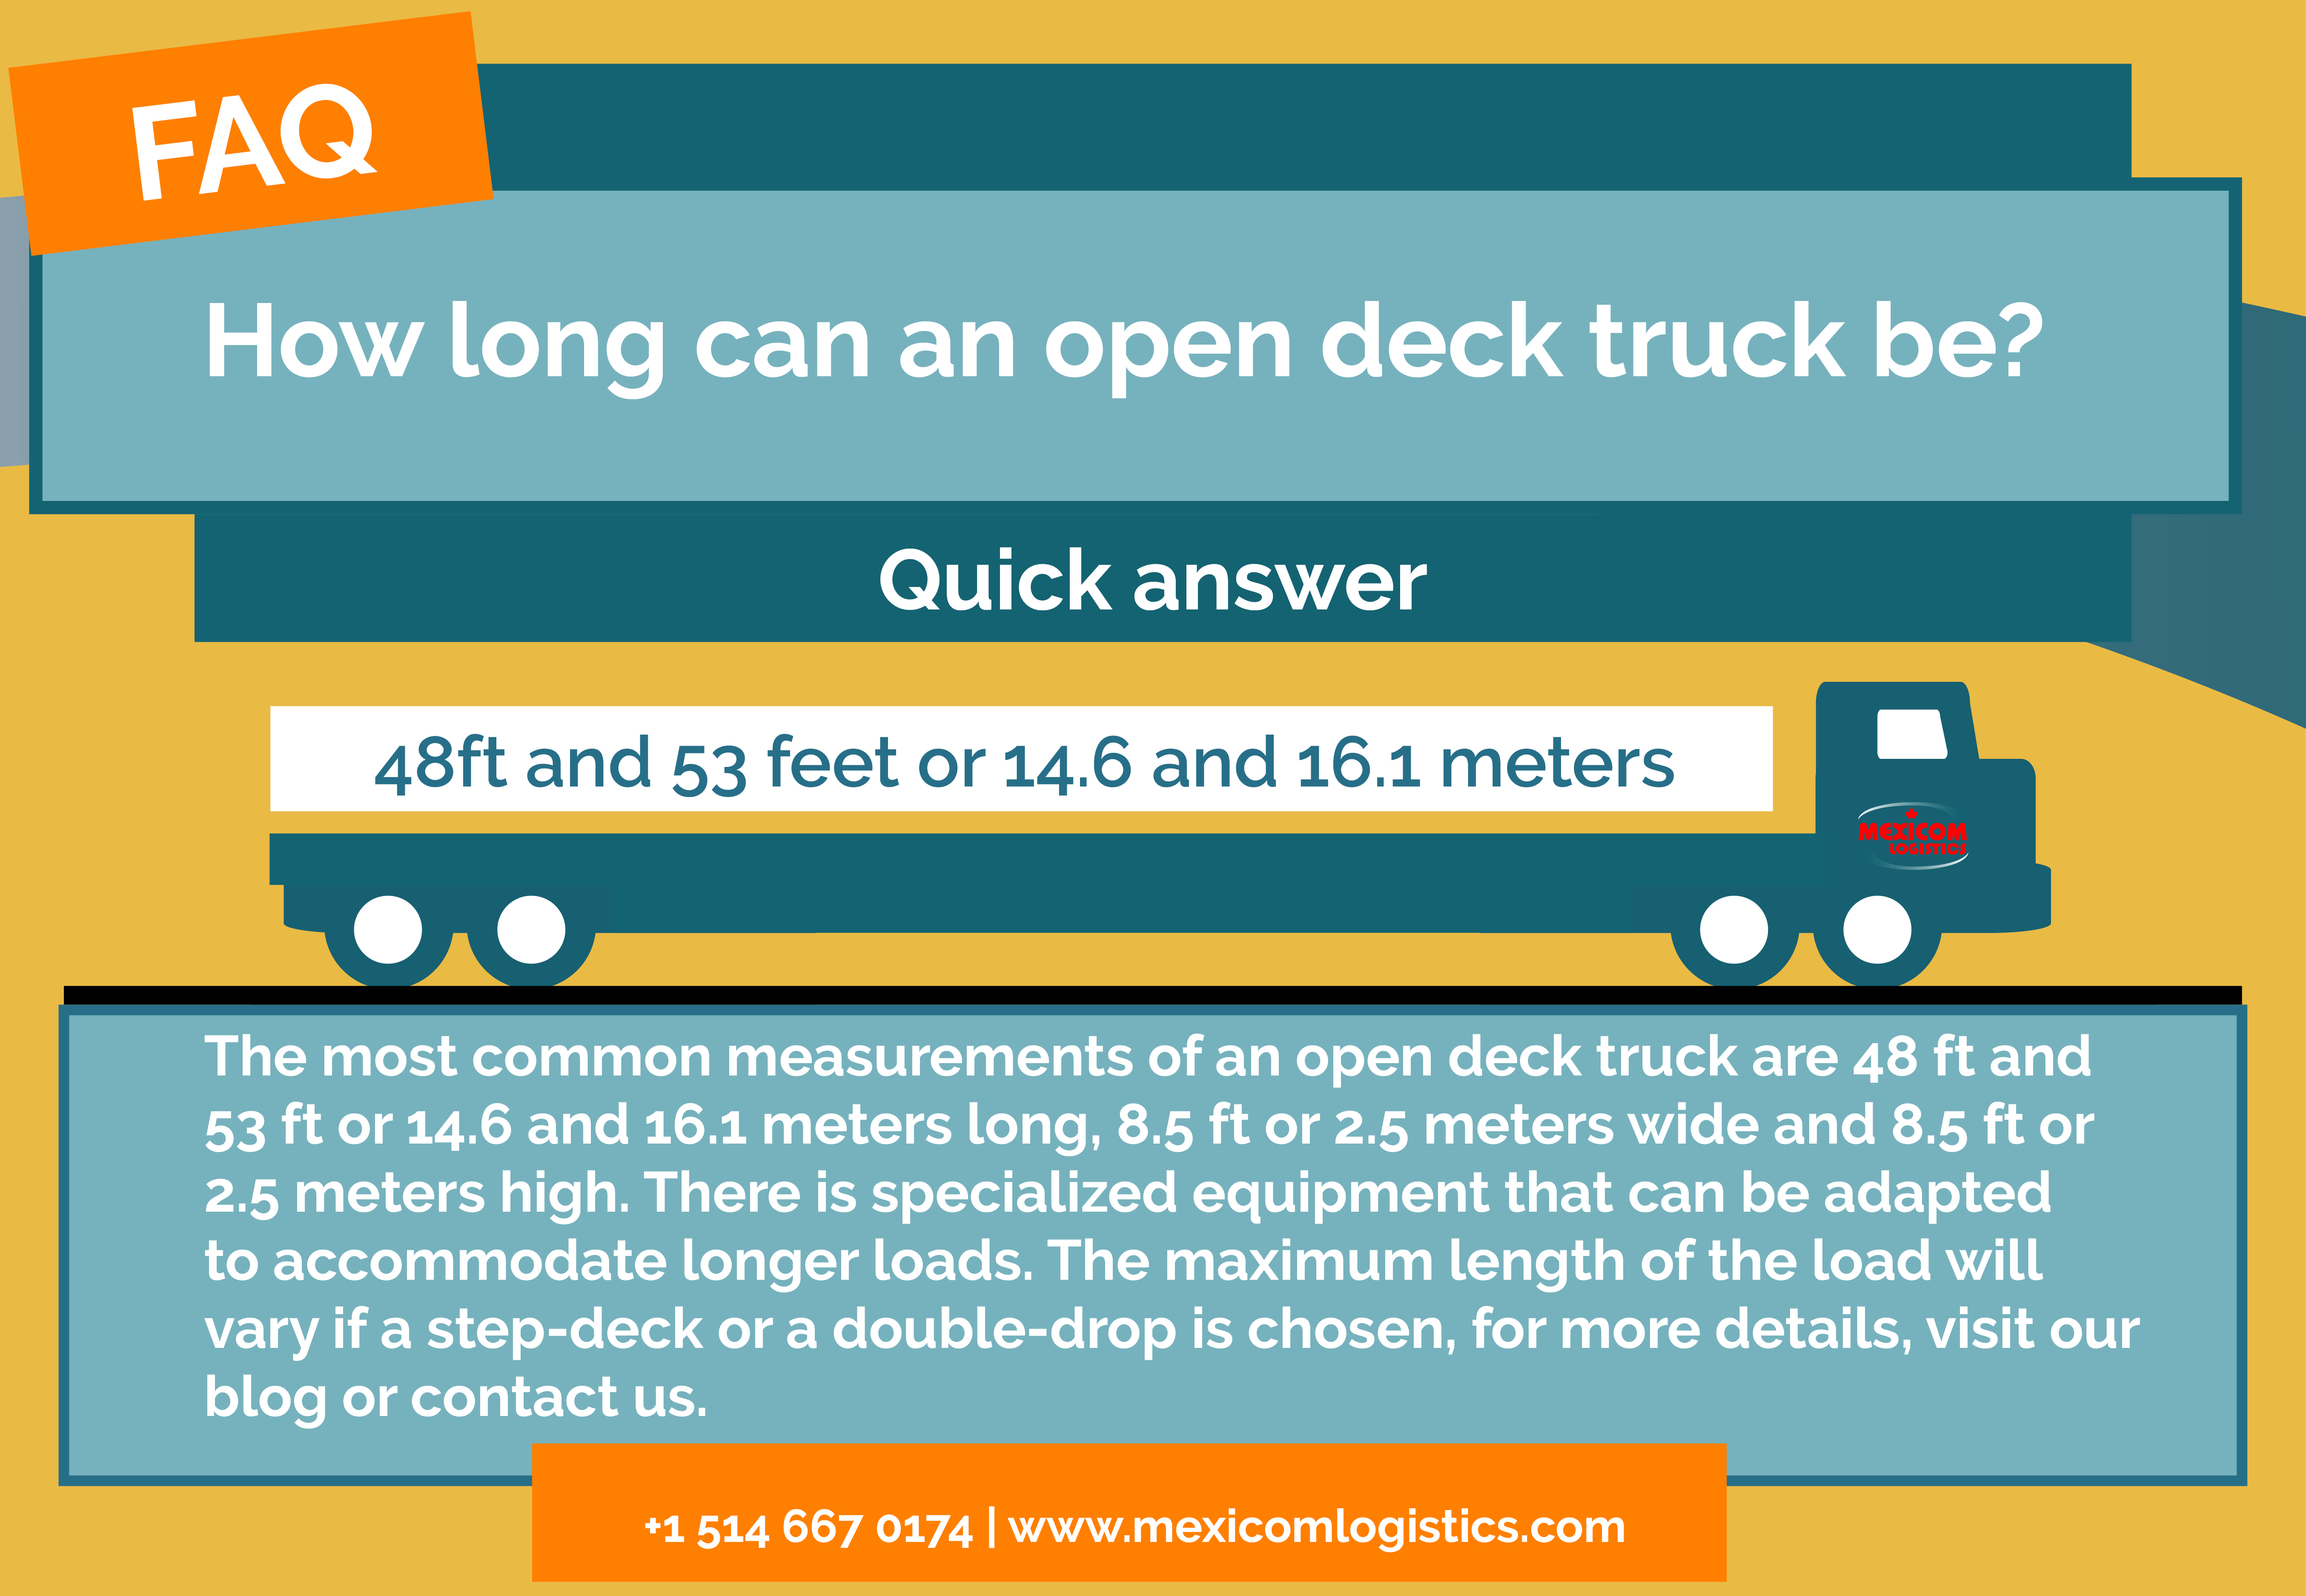 How long can an open deck truck be?